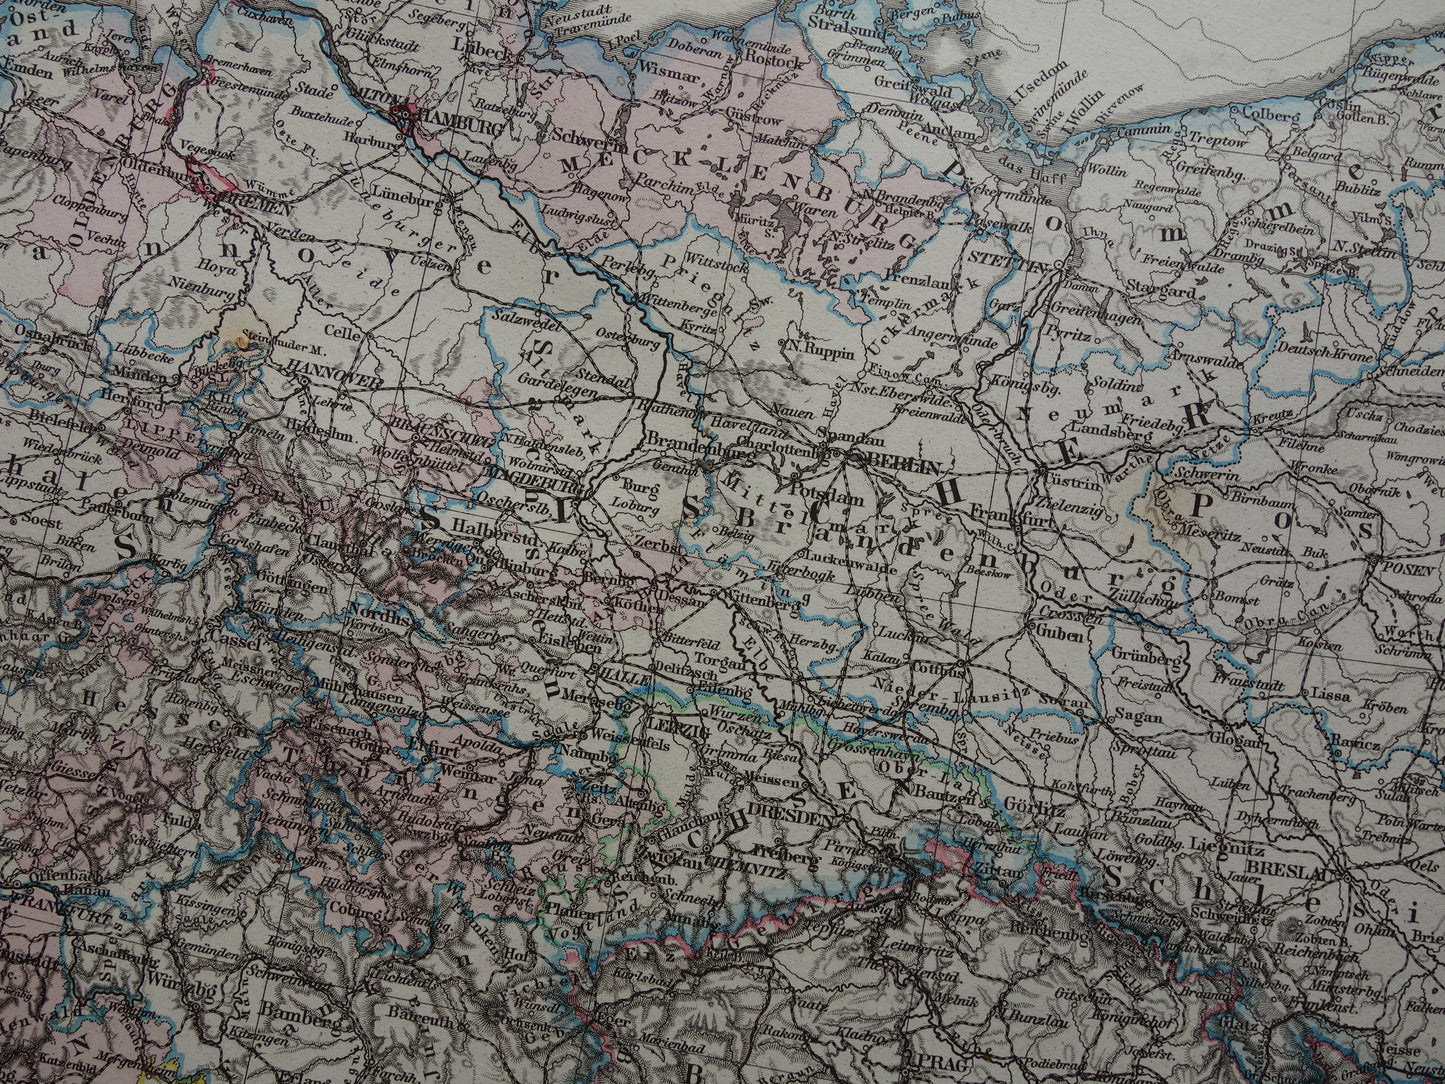 DUITSLAND Antieke landkaart van het Duitse Rijk in 1876 Grote originele 145+ jaar oude kaart Berlijn Pruissen Polen